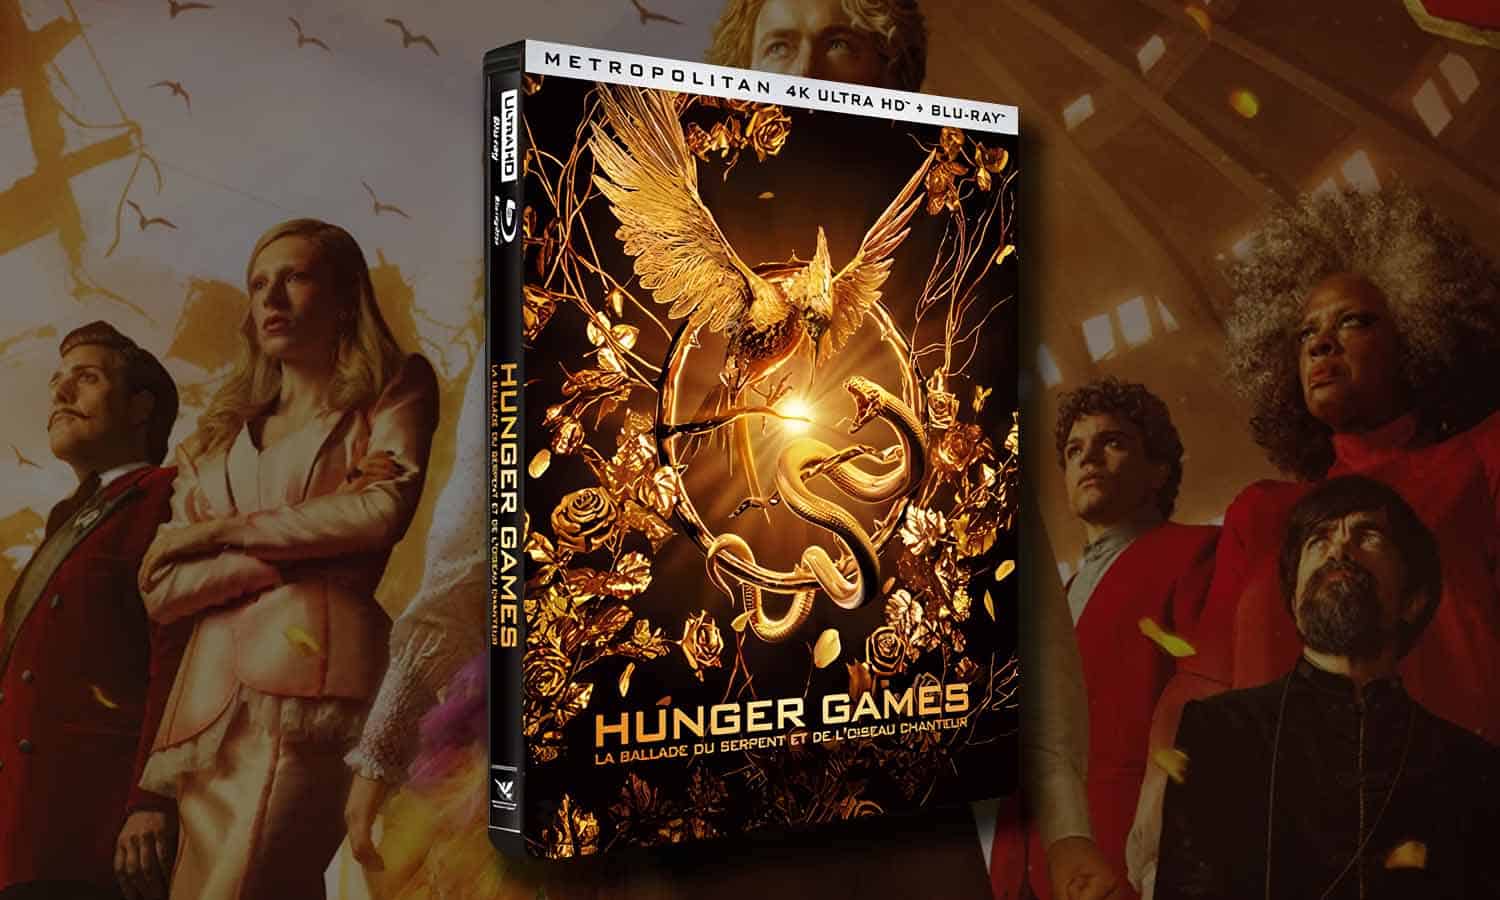 Hunger Games 5 4K Steelbook La Ballade du Serpent et de l'Oiseau Chanteur :  dispo et prix